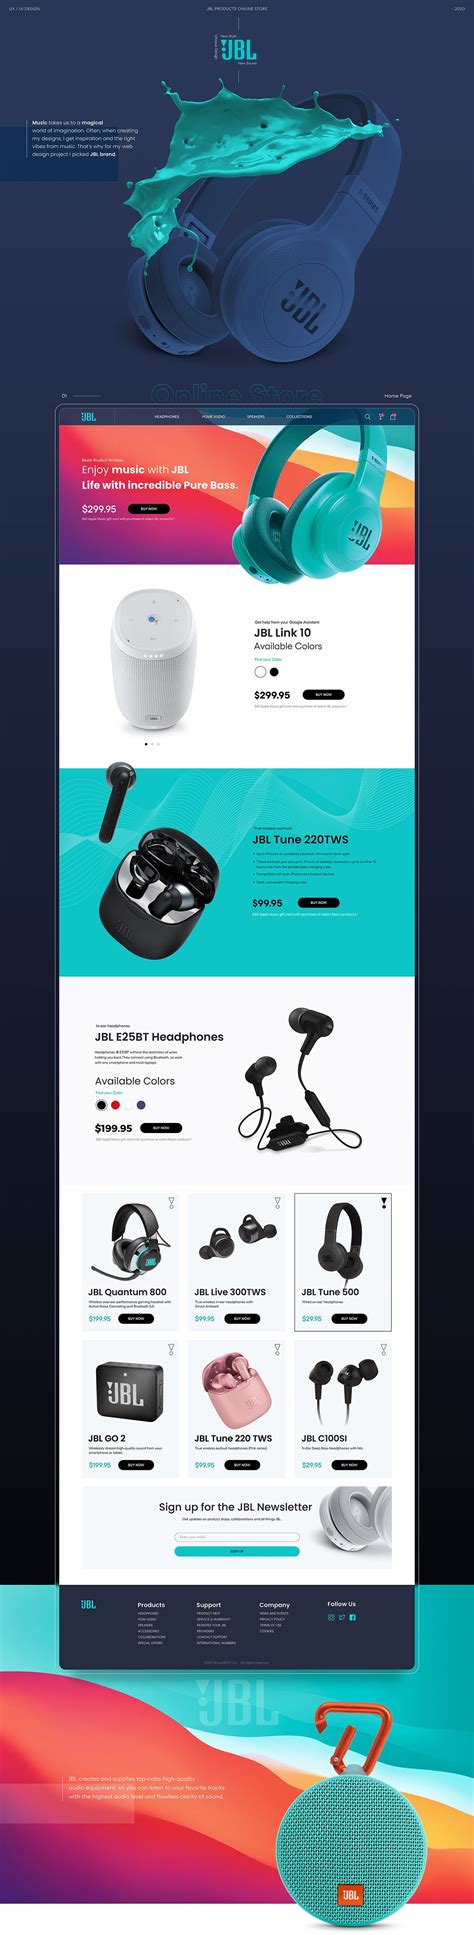 JBL在线购物商城网页概念设计 - 第一视觉